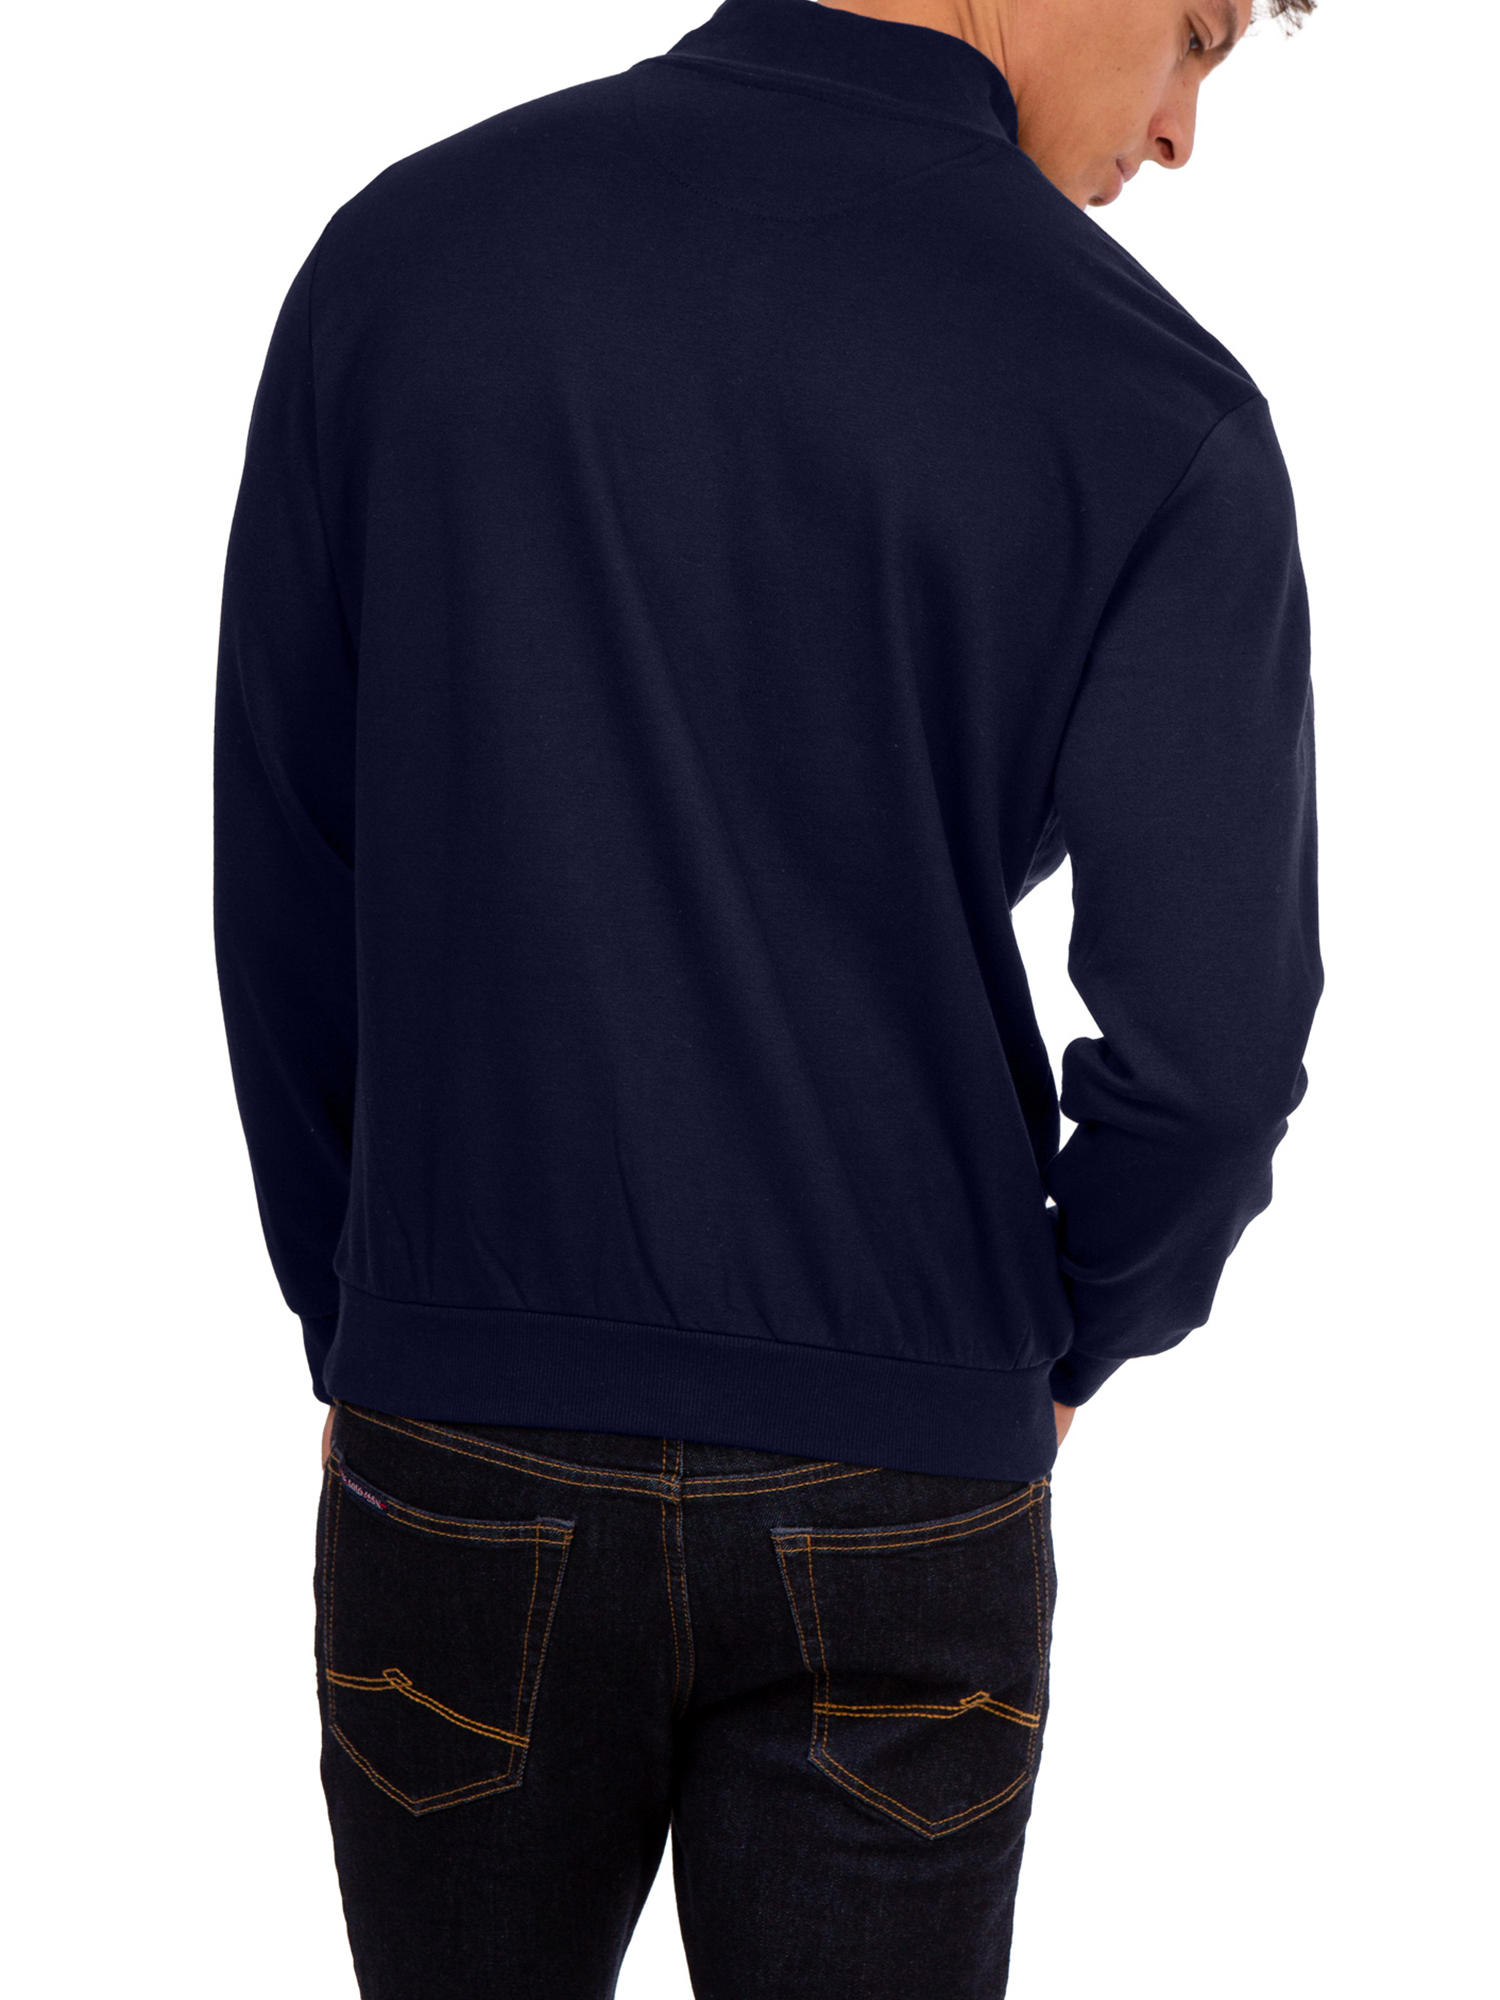 U.S. Polo Assn. Men's Quarter Zip Mock Neck Fleece Pullover - image 2 of 3